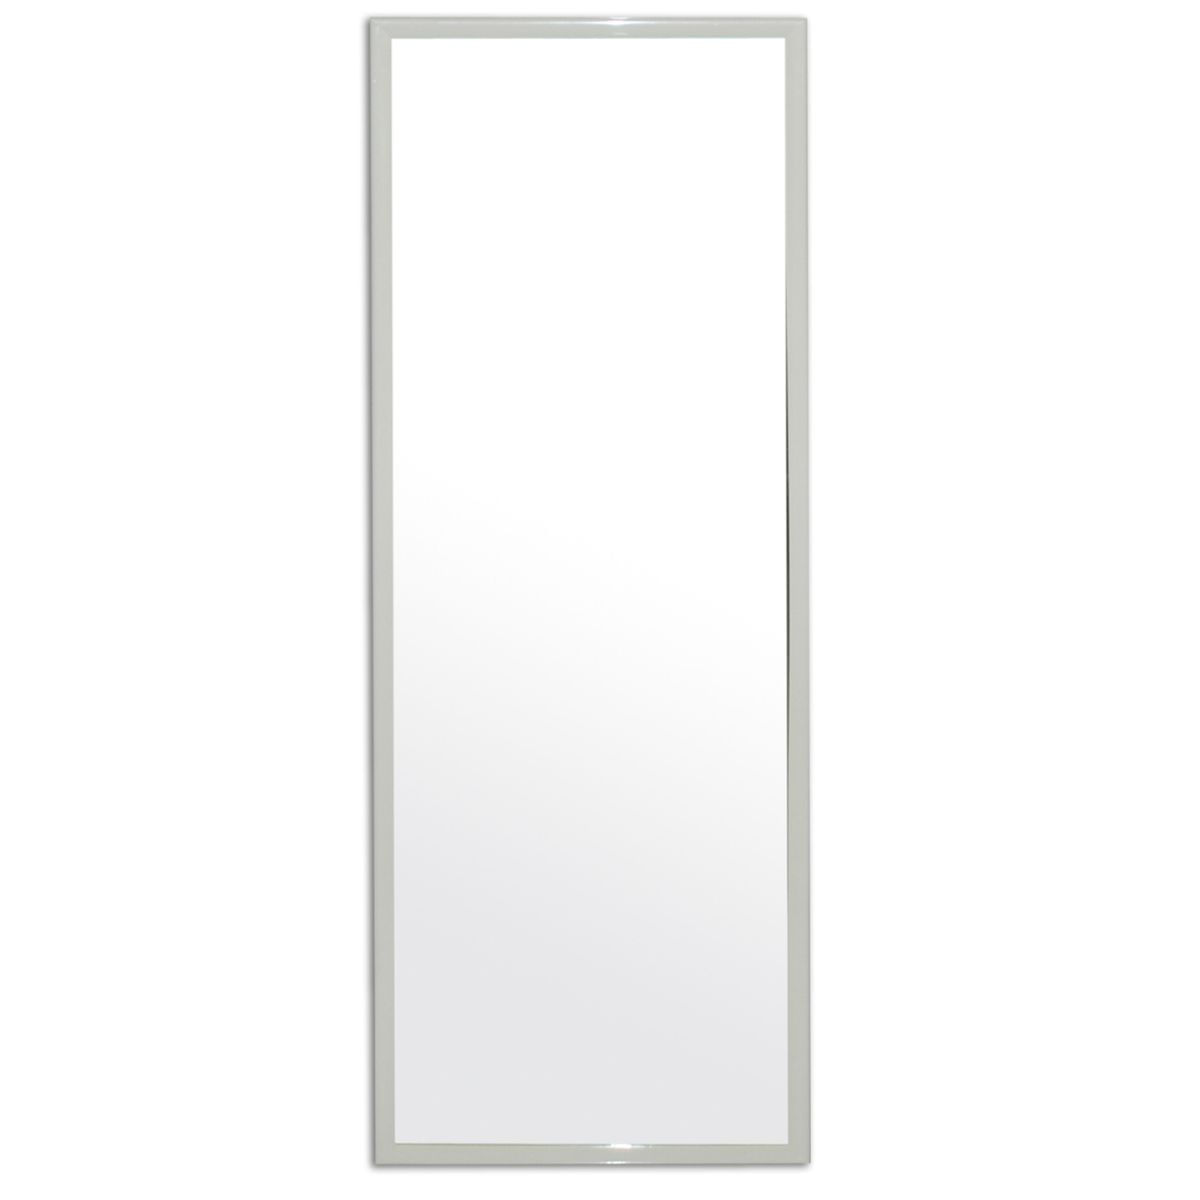 Espelho Emoldurado Retangular Carrefour 90x30cm - HO55216